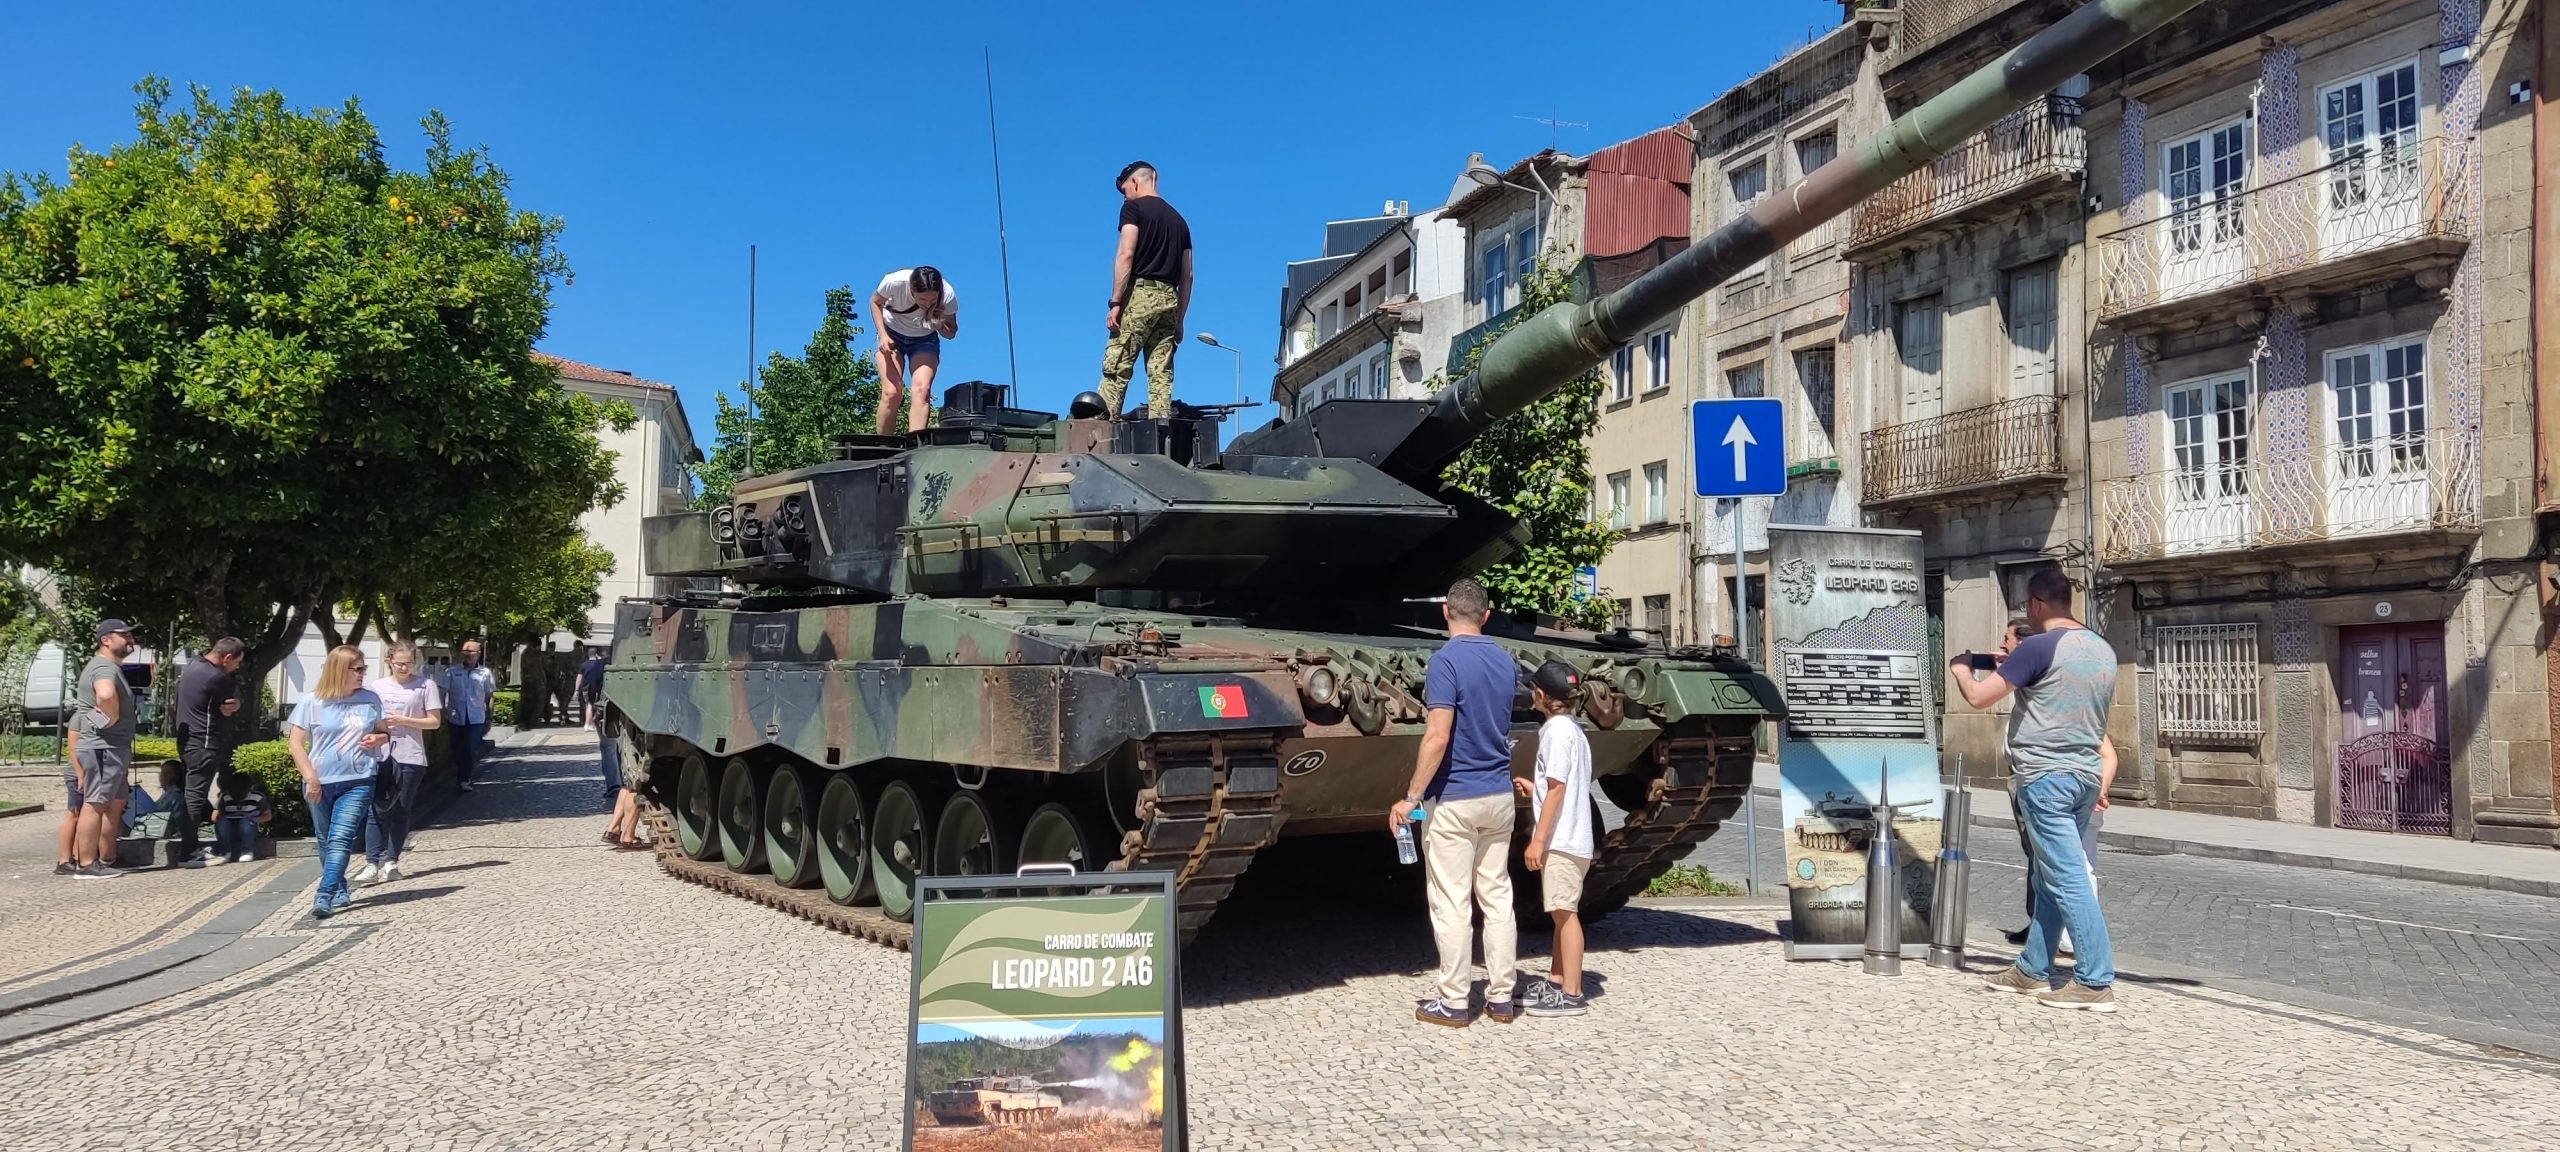 Танк Leopard 2A6 військових Португалії Фото з відкритих джерел